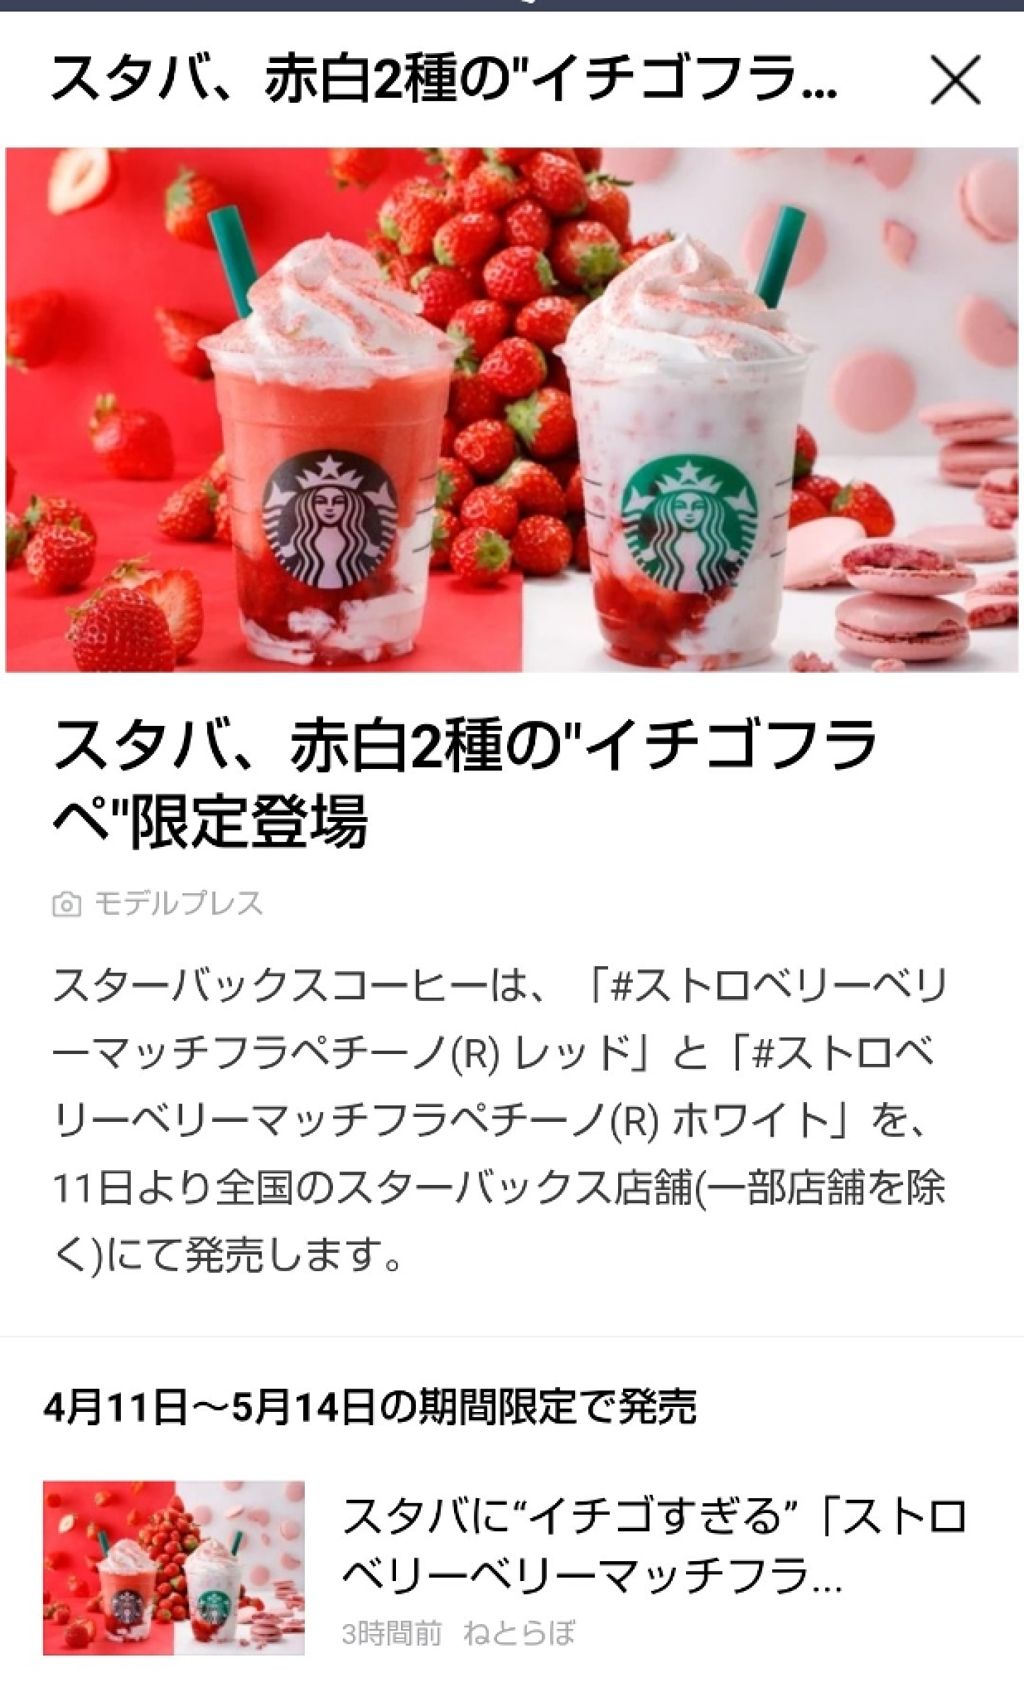 豆乳 スターバックス コーヒー ジャパンの口コミ スタバ イチゴ とりあえず豆乳ではなかっ By Asami Lips